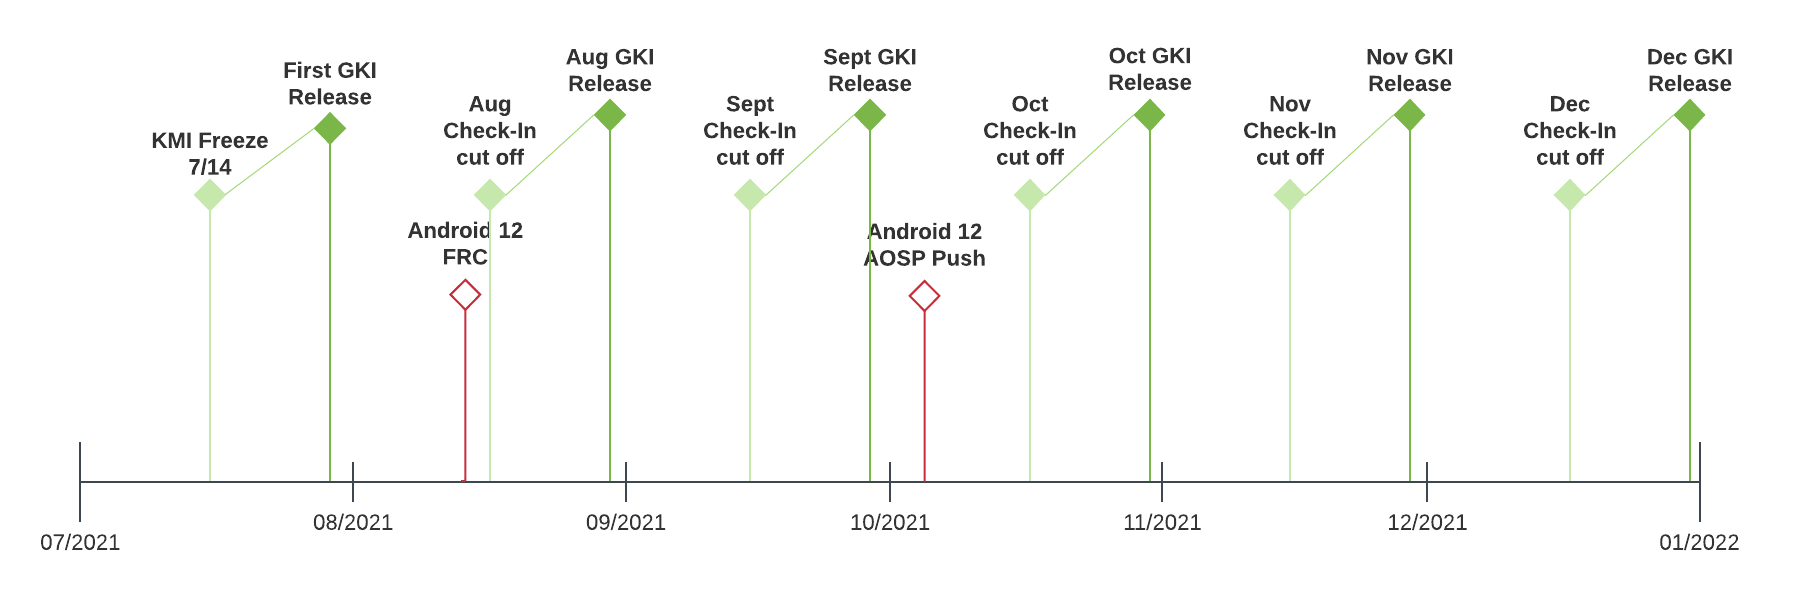 المخطط الزمني لوتيرة إصدار GKI